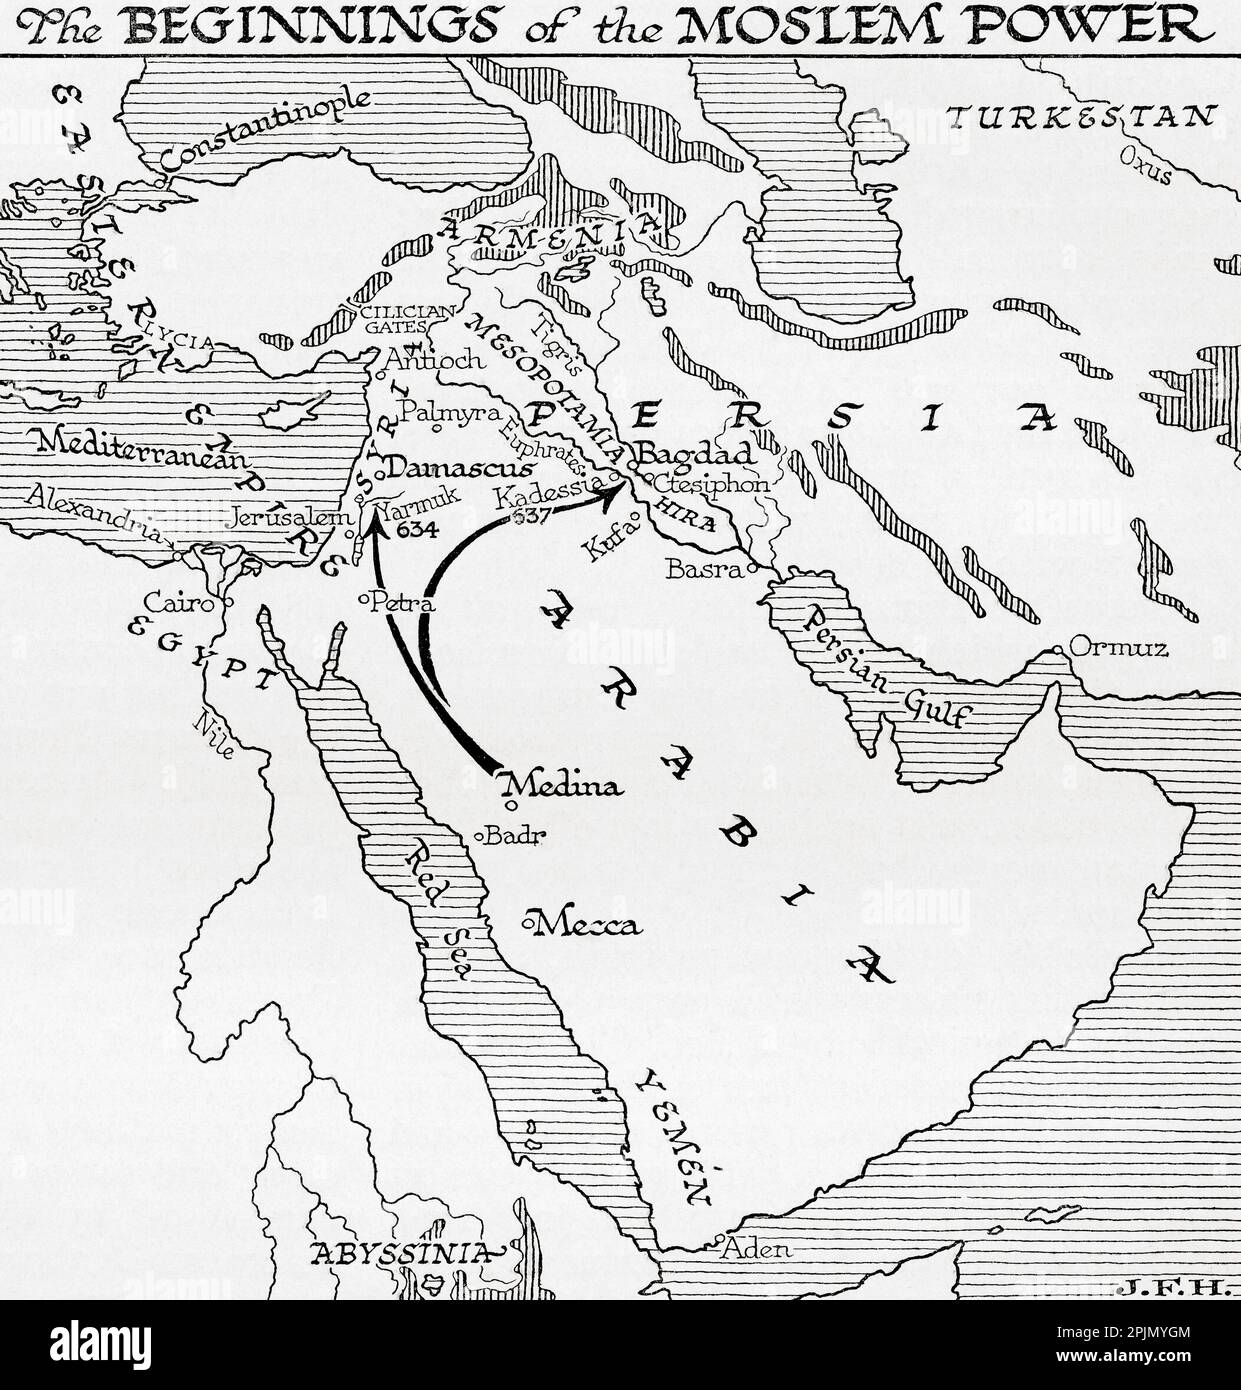 Karte mit den Anfängen der Moslemmacht, 7. Jahrhundert. Aus dem Buch Outline of History von H.G. Wells, veröffentlicht 1920. Stockfoto